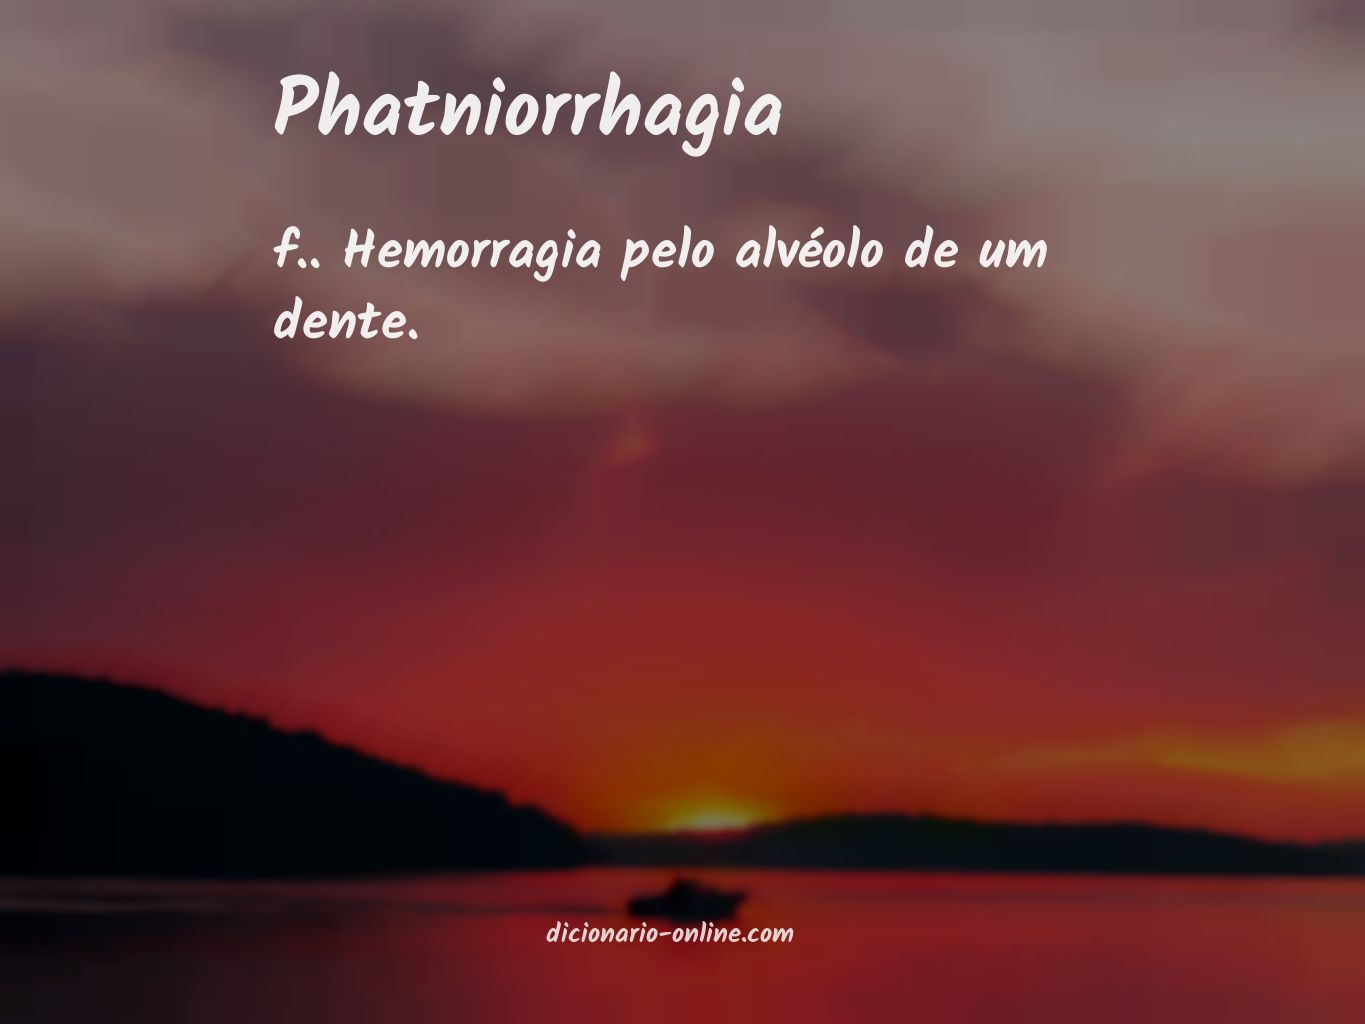 Significado de phatniorrhagia